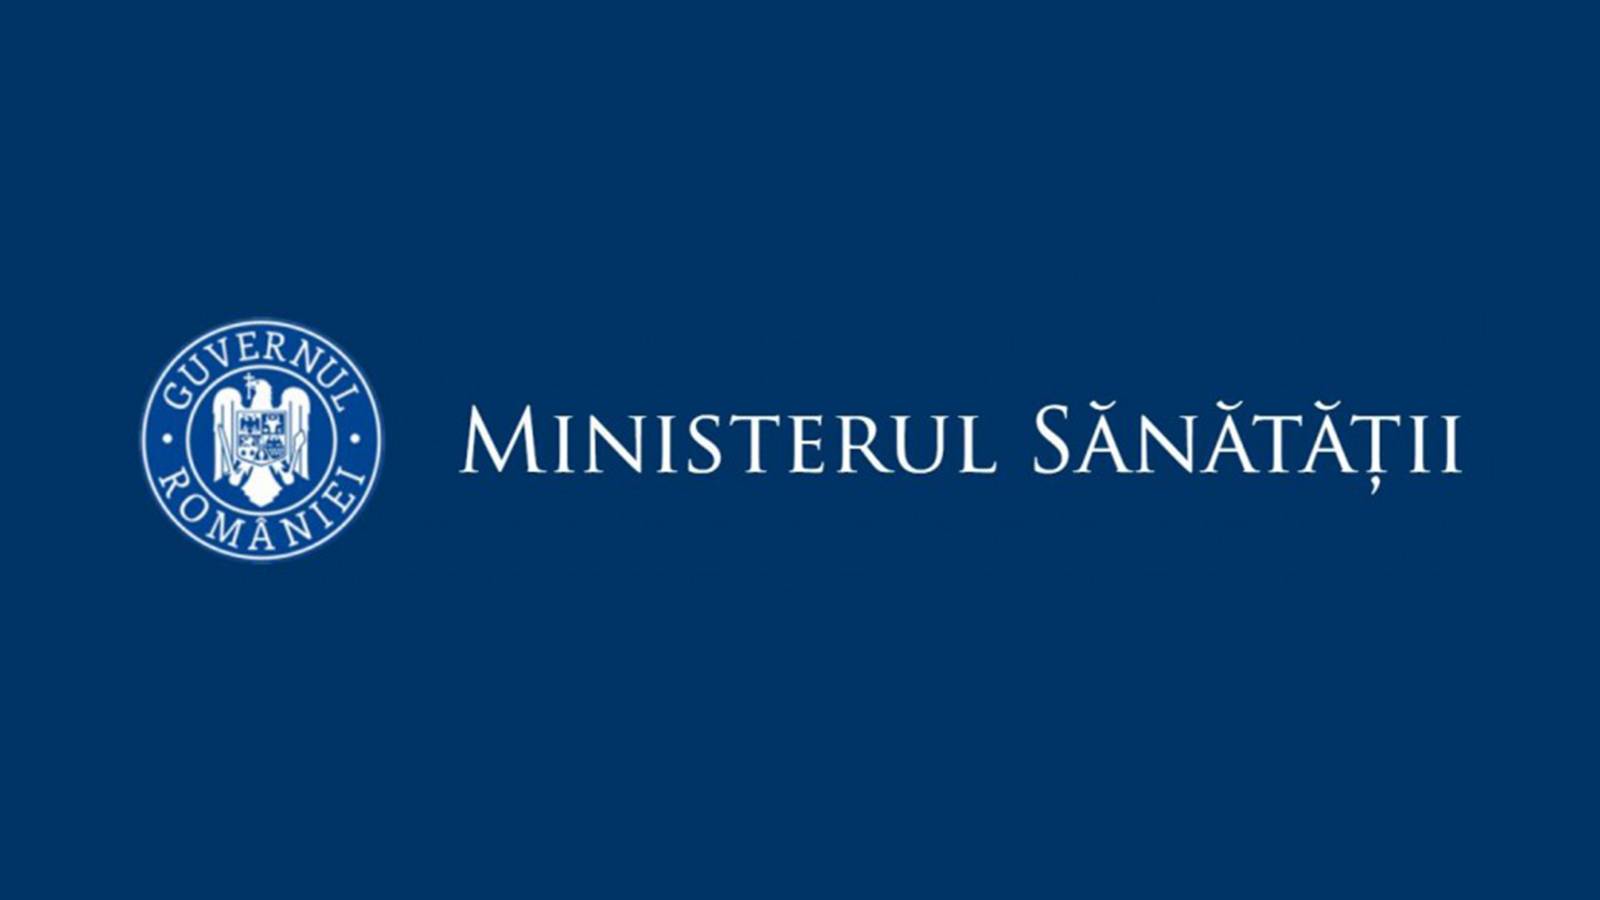 Ministerul Sanatatii Cresterea Ratelor de Incidenta pe Judete in 18 Octombrie 2021